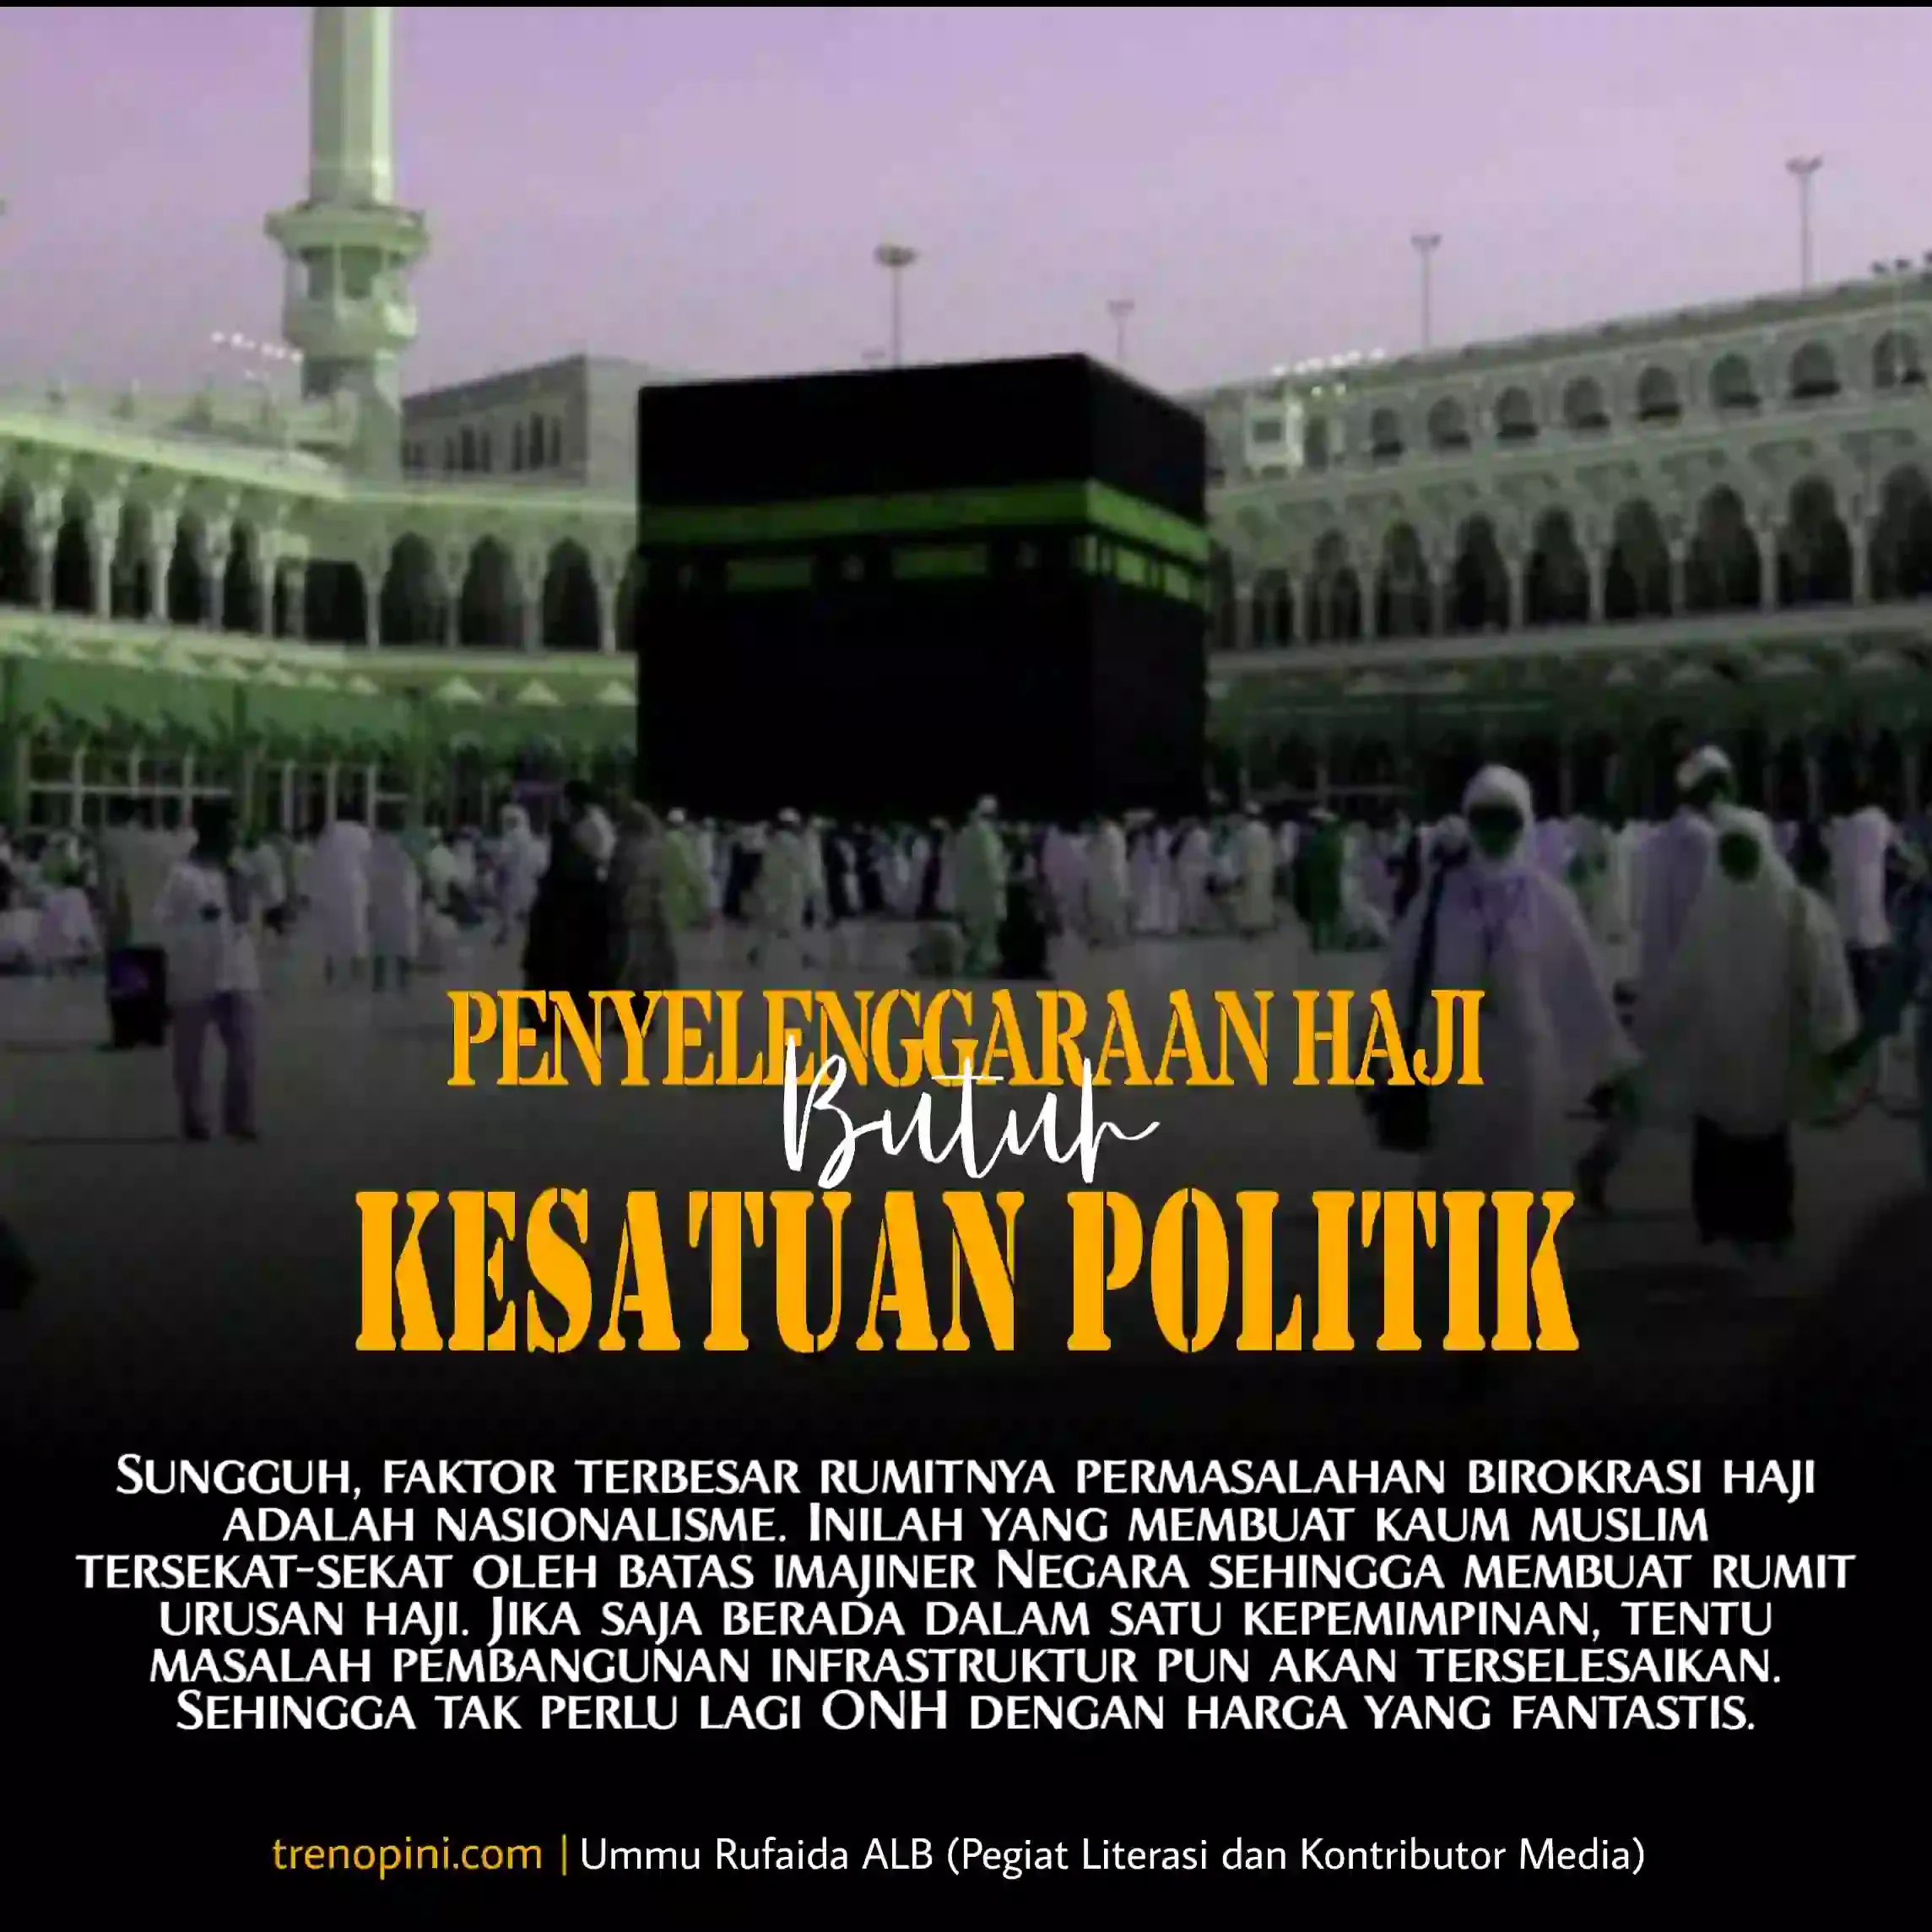 Haji dan persatuan politik umat islam